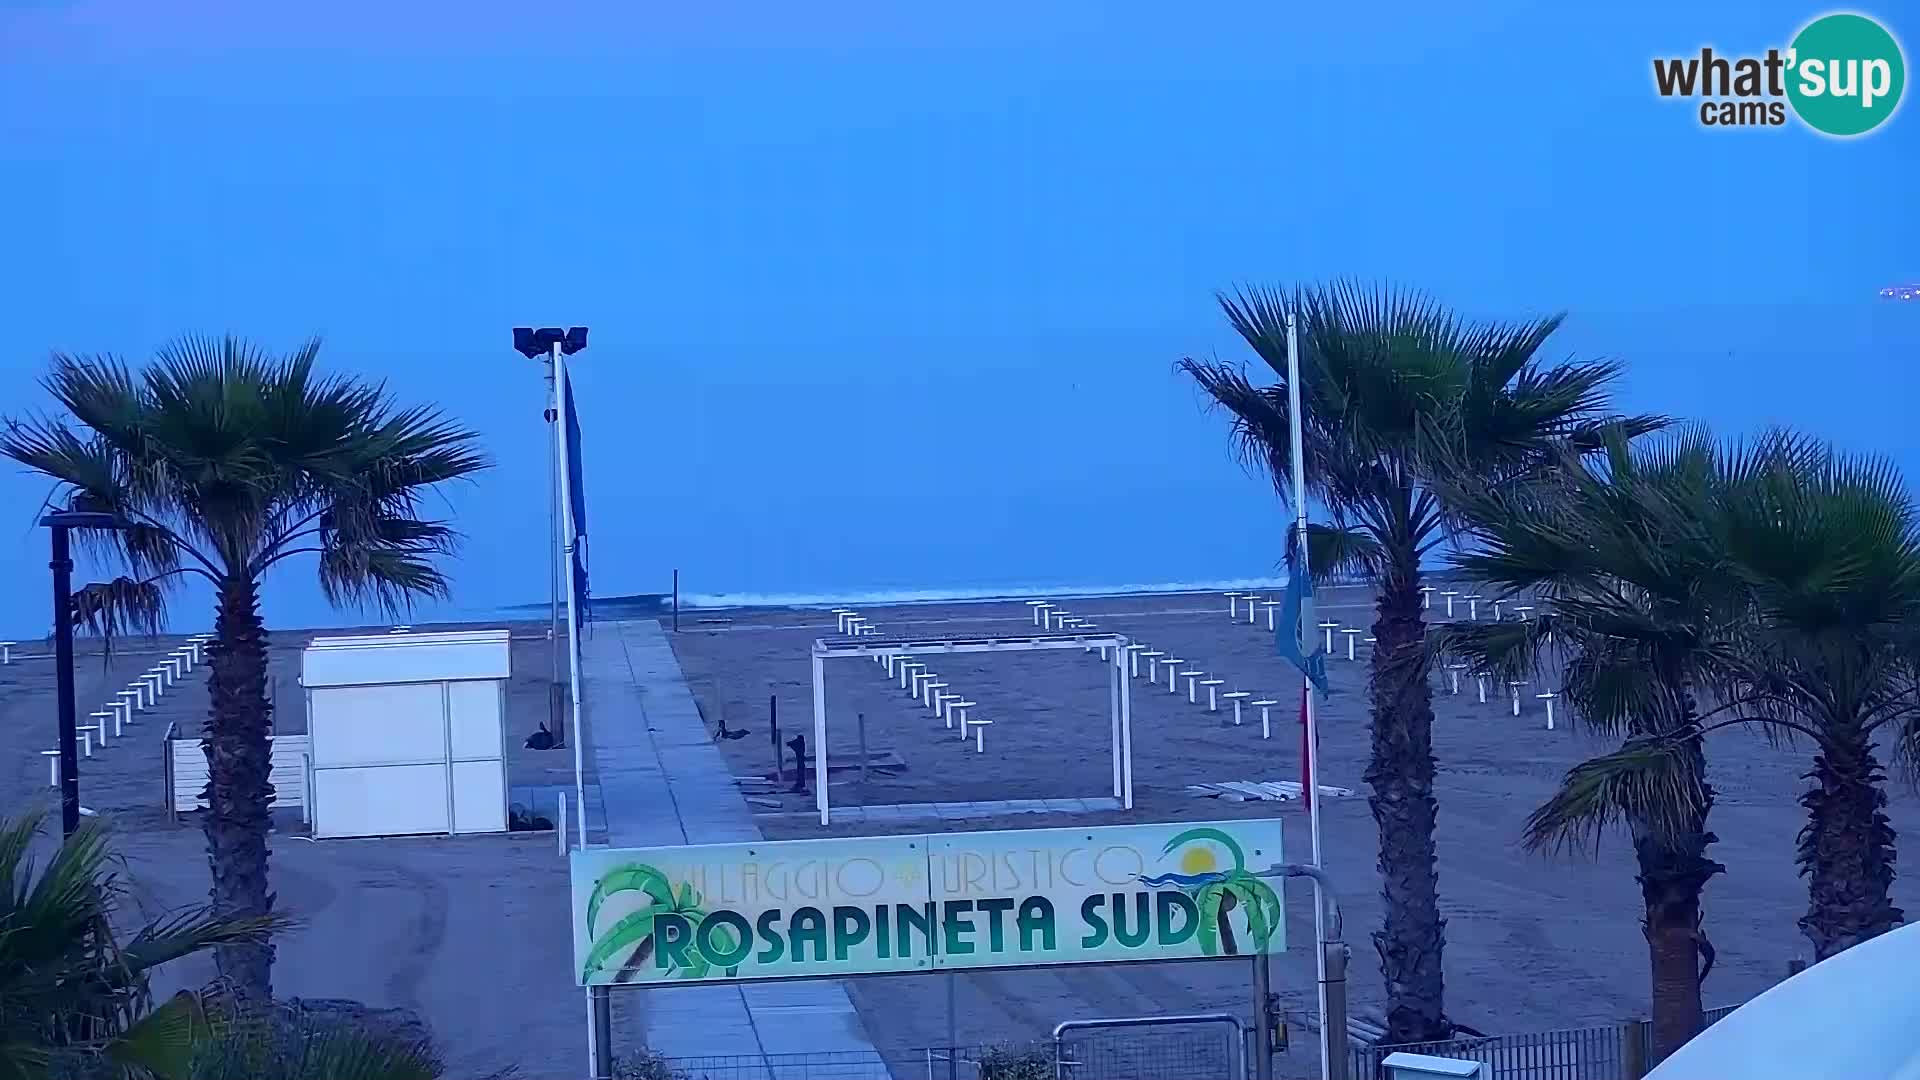 Feriendorf Rosapineta Sud – webcam